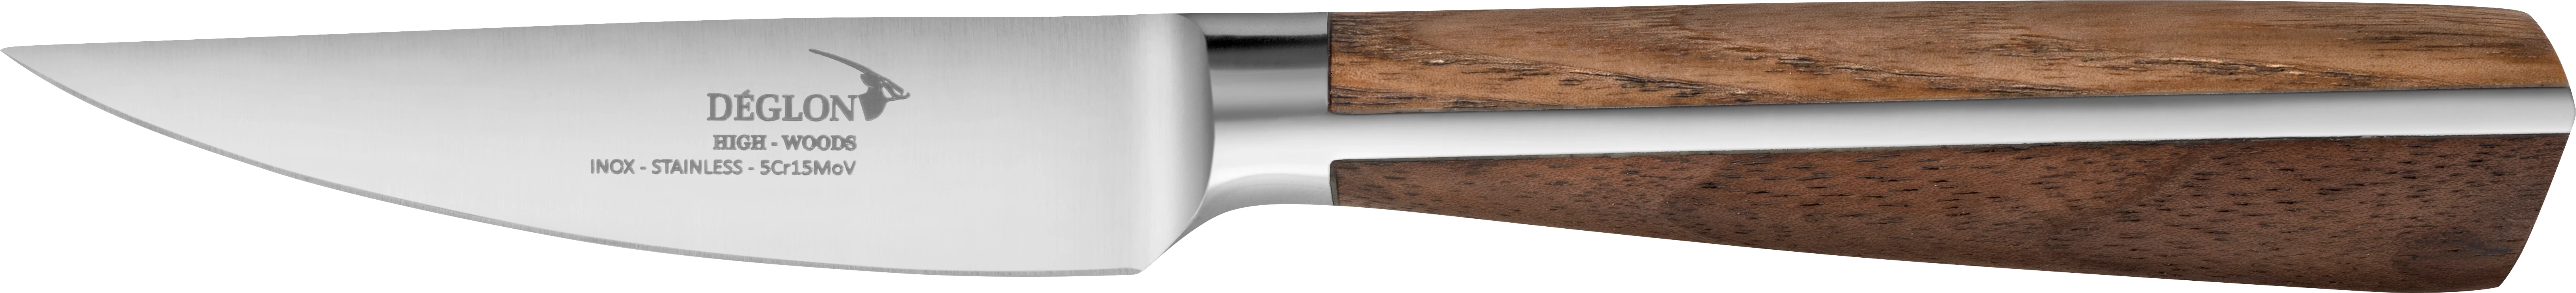 Deglon High-Woods urtekniv med træskaft, 9 cm